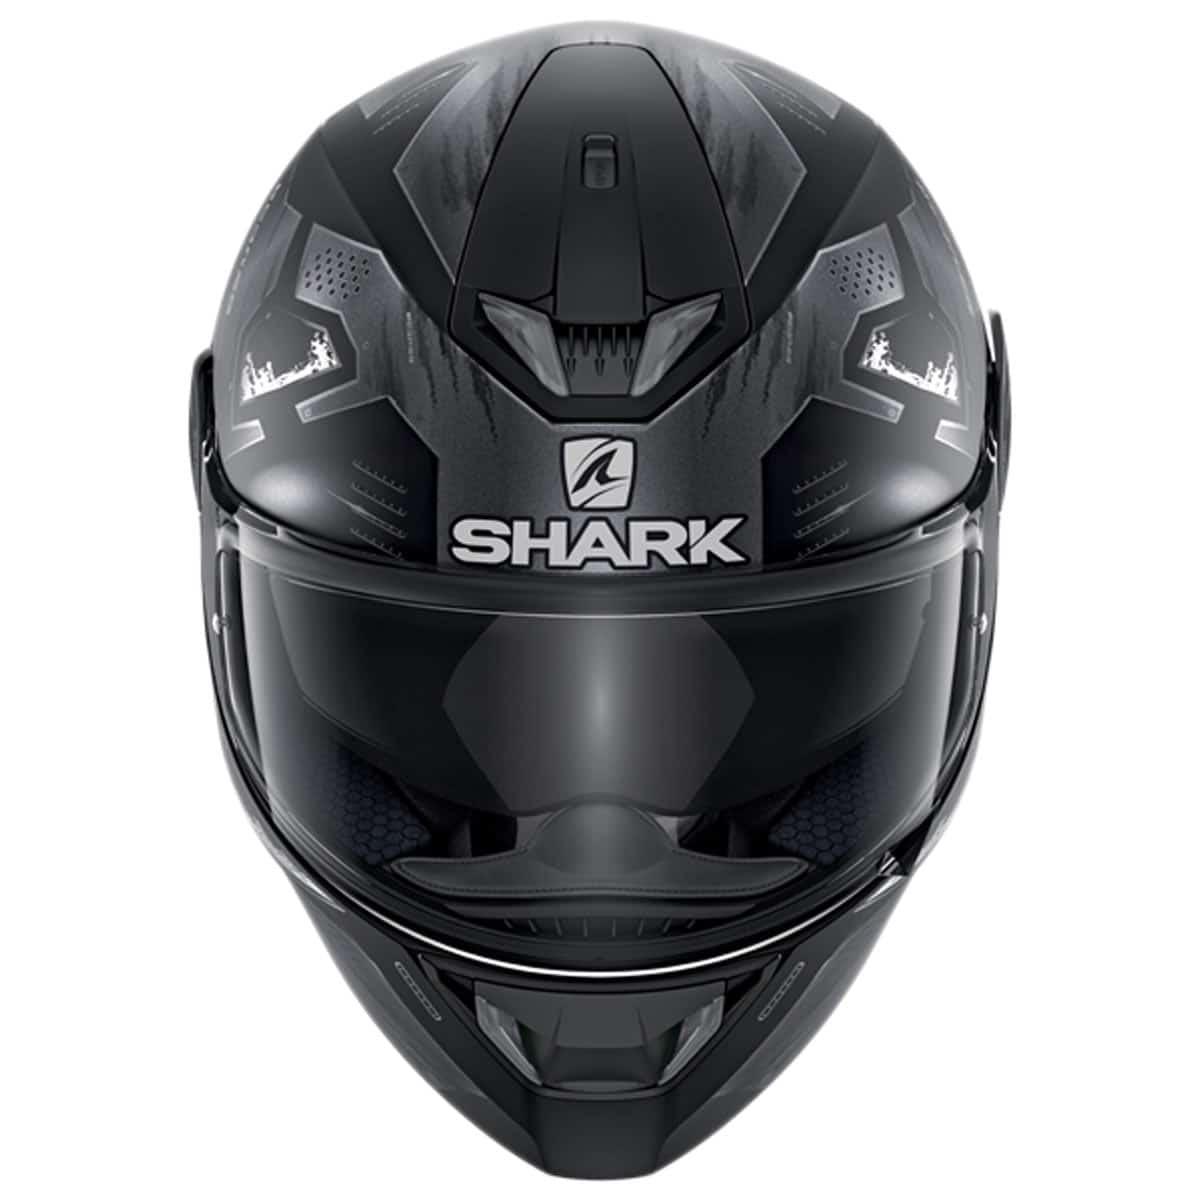 Shark Skwal 2 Venger Helmet KAA - Matt Black - getgearedshop